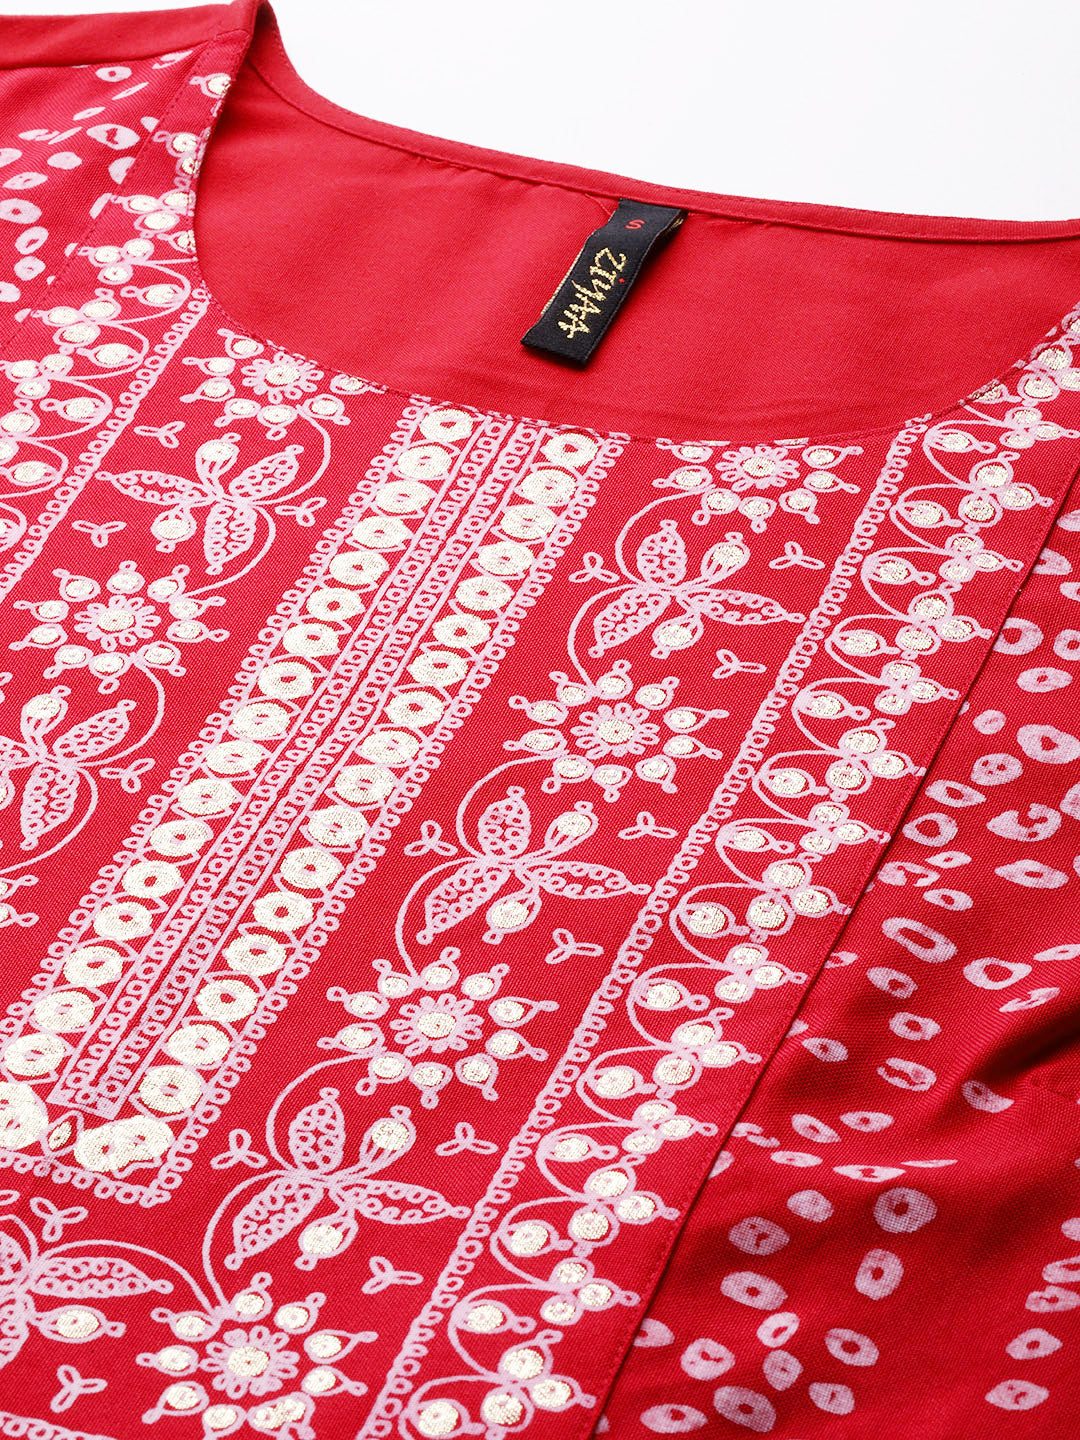 Women's Red Poly Rayon Straight Kurta And Pant Set - Ziyaa